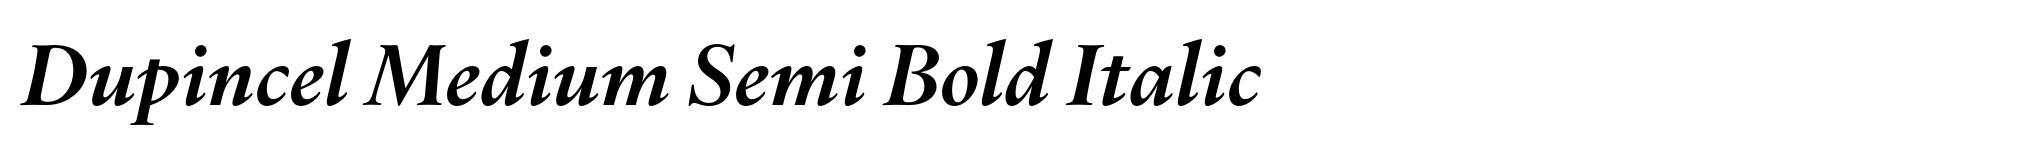 Dupincel Medium Semi Bold Italic image